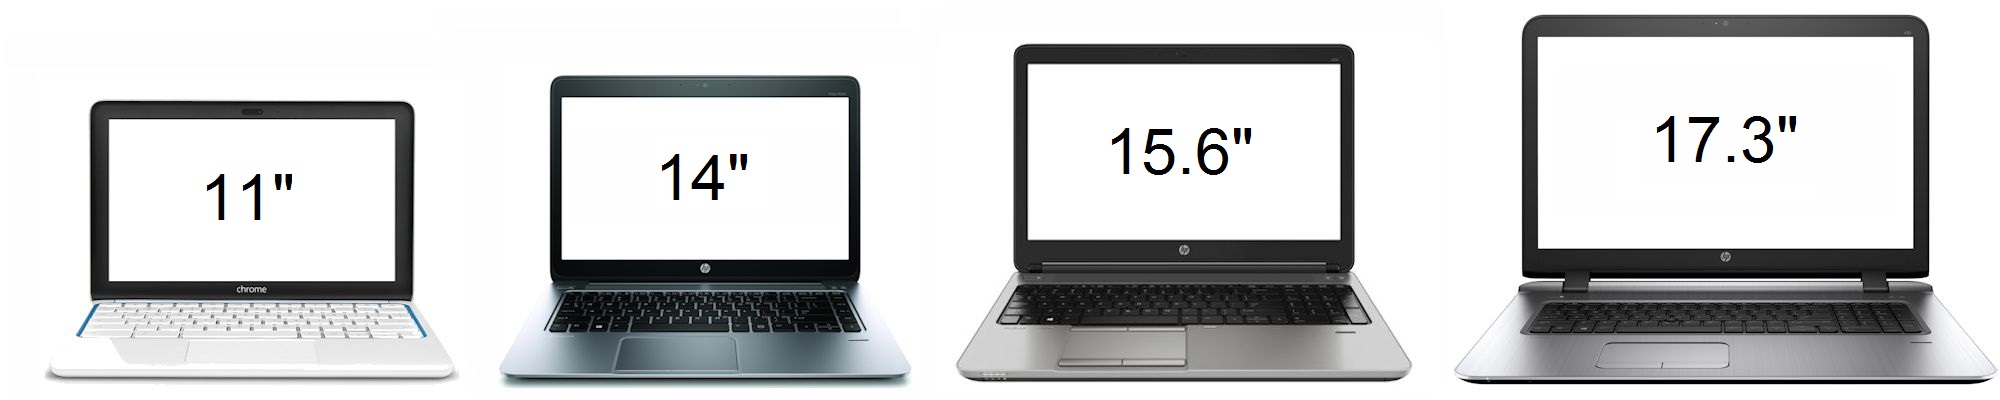 27 и 4 3 сравнить. 14 Дюймов vs 15.6 vs 17.3. Ноутбук 17 дюймов vs 15 дюймов. Ноутбук 15.6 дюймов габариты. Ноутбук 15.6 vs 16 ASUS.